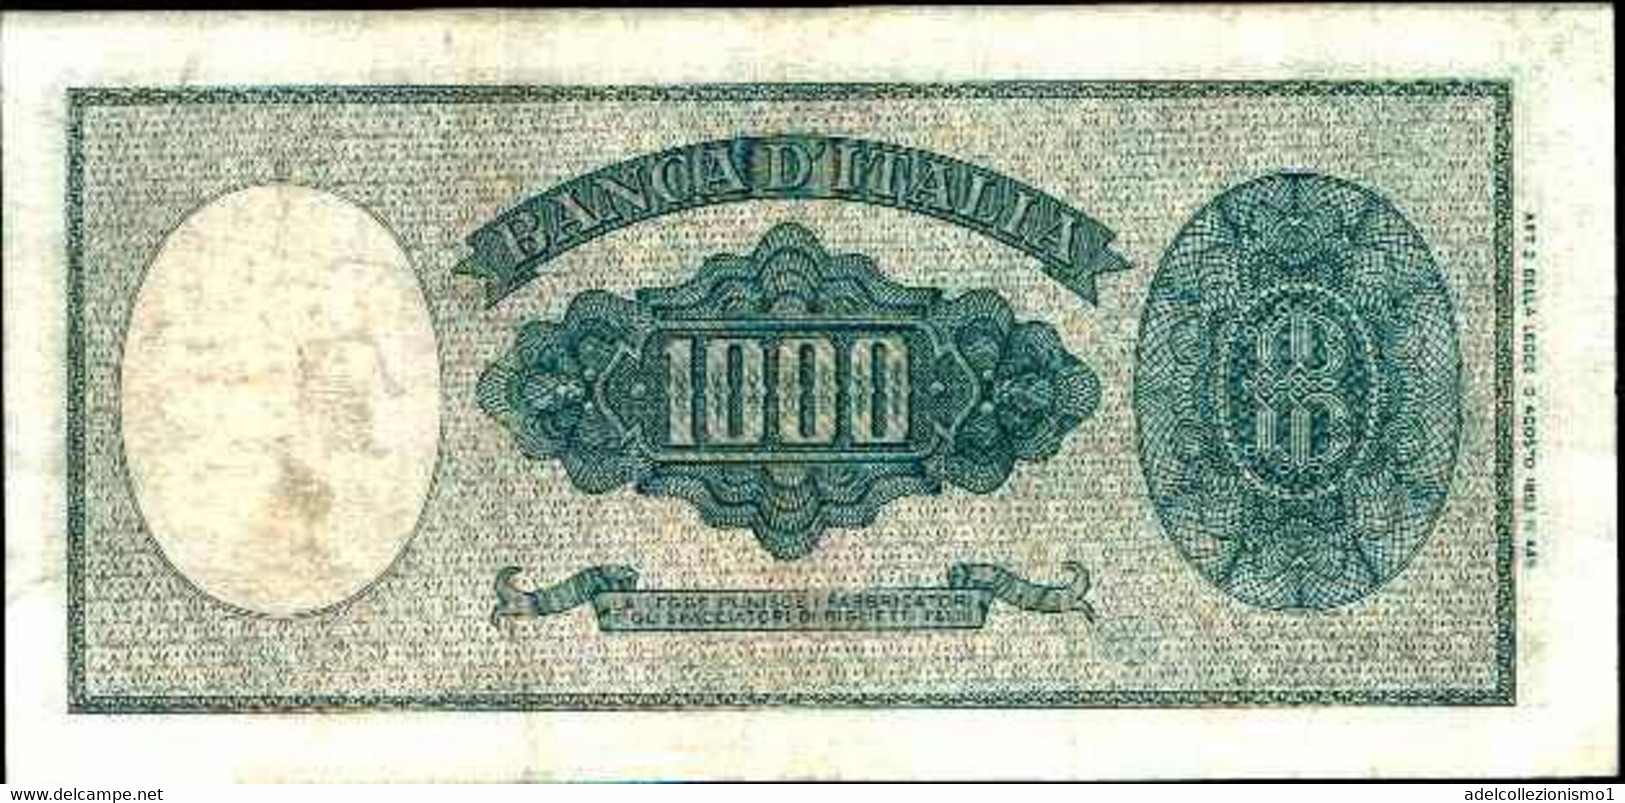 29677) 1000 LIRE ITALIA ORNATA DI PERLE DECR 25 SERTTEMBRE 1961-FDS - 1000 Lire